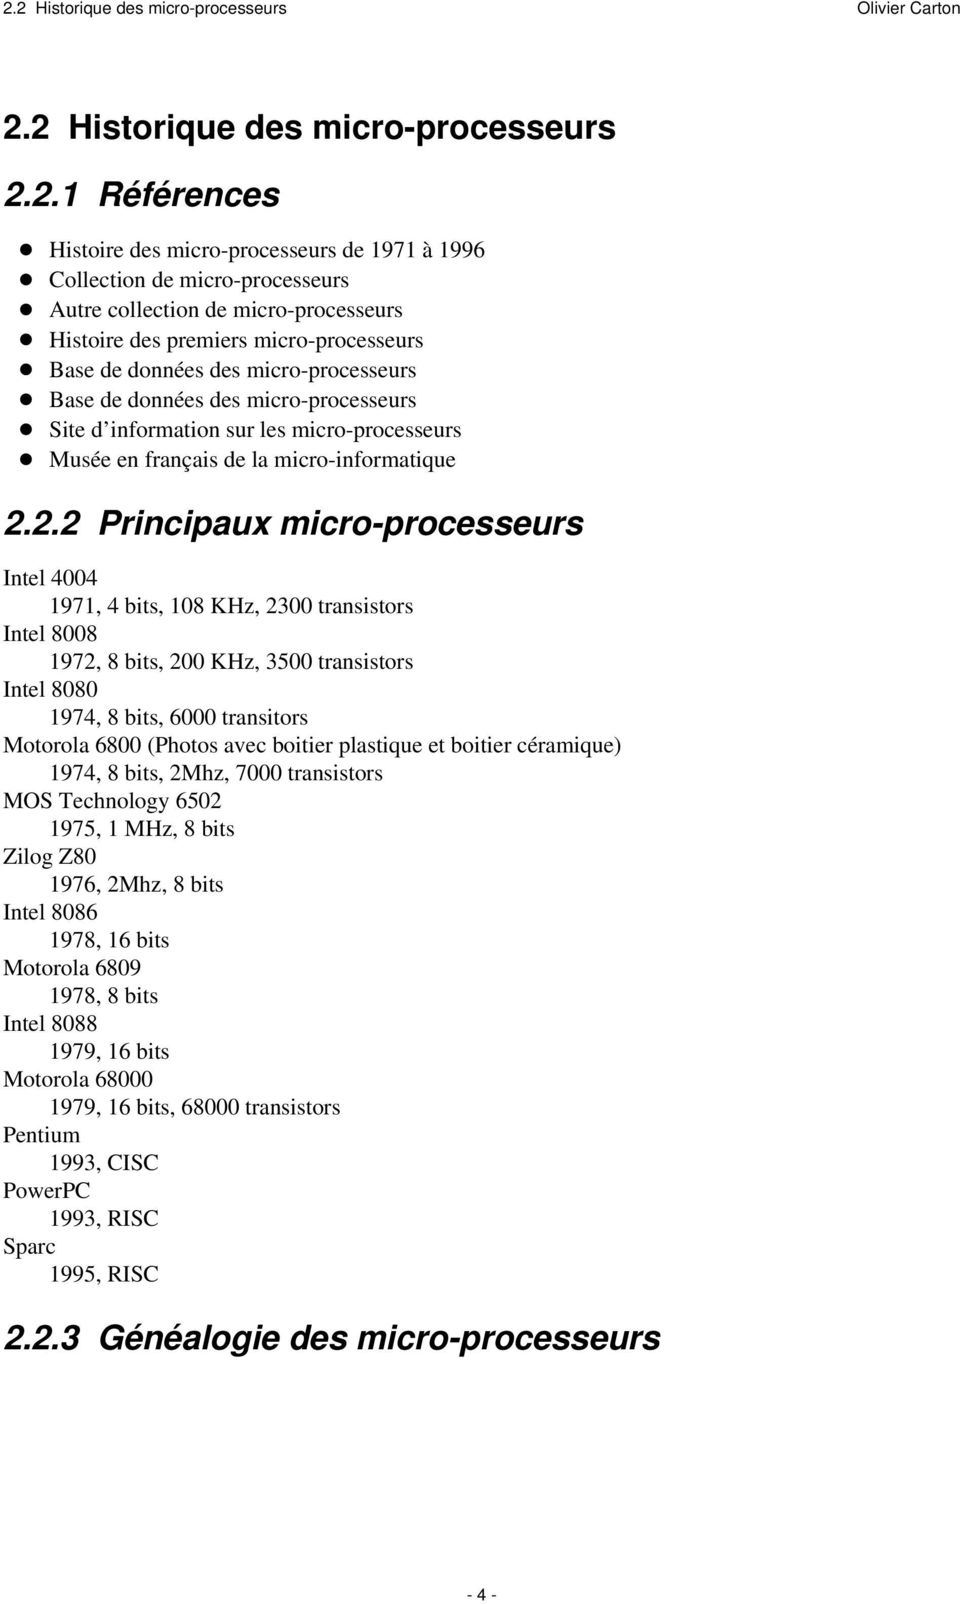 la micro-informatique 222 Principaux micro-processeurs Intel 4004 1971, 4 bits, 108 KHz, 2300 transistors Intel 8008 1972, 8 bits, 200 KHz, 3500 transistors Intel 8080 1974, 8 bits, 6000 transitors